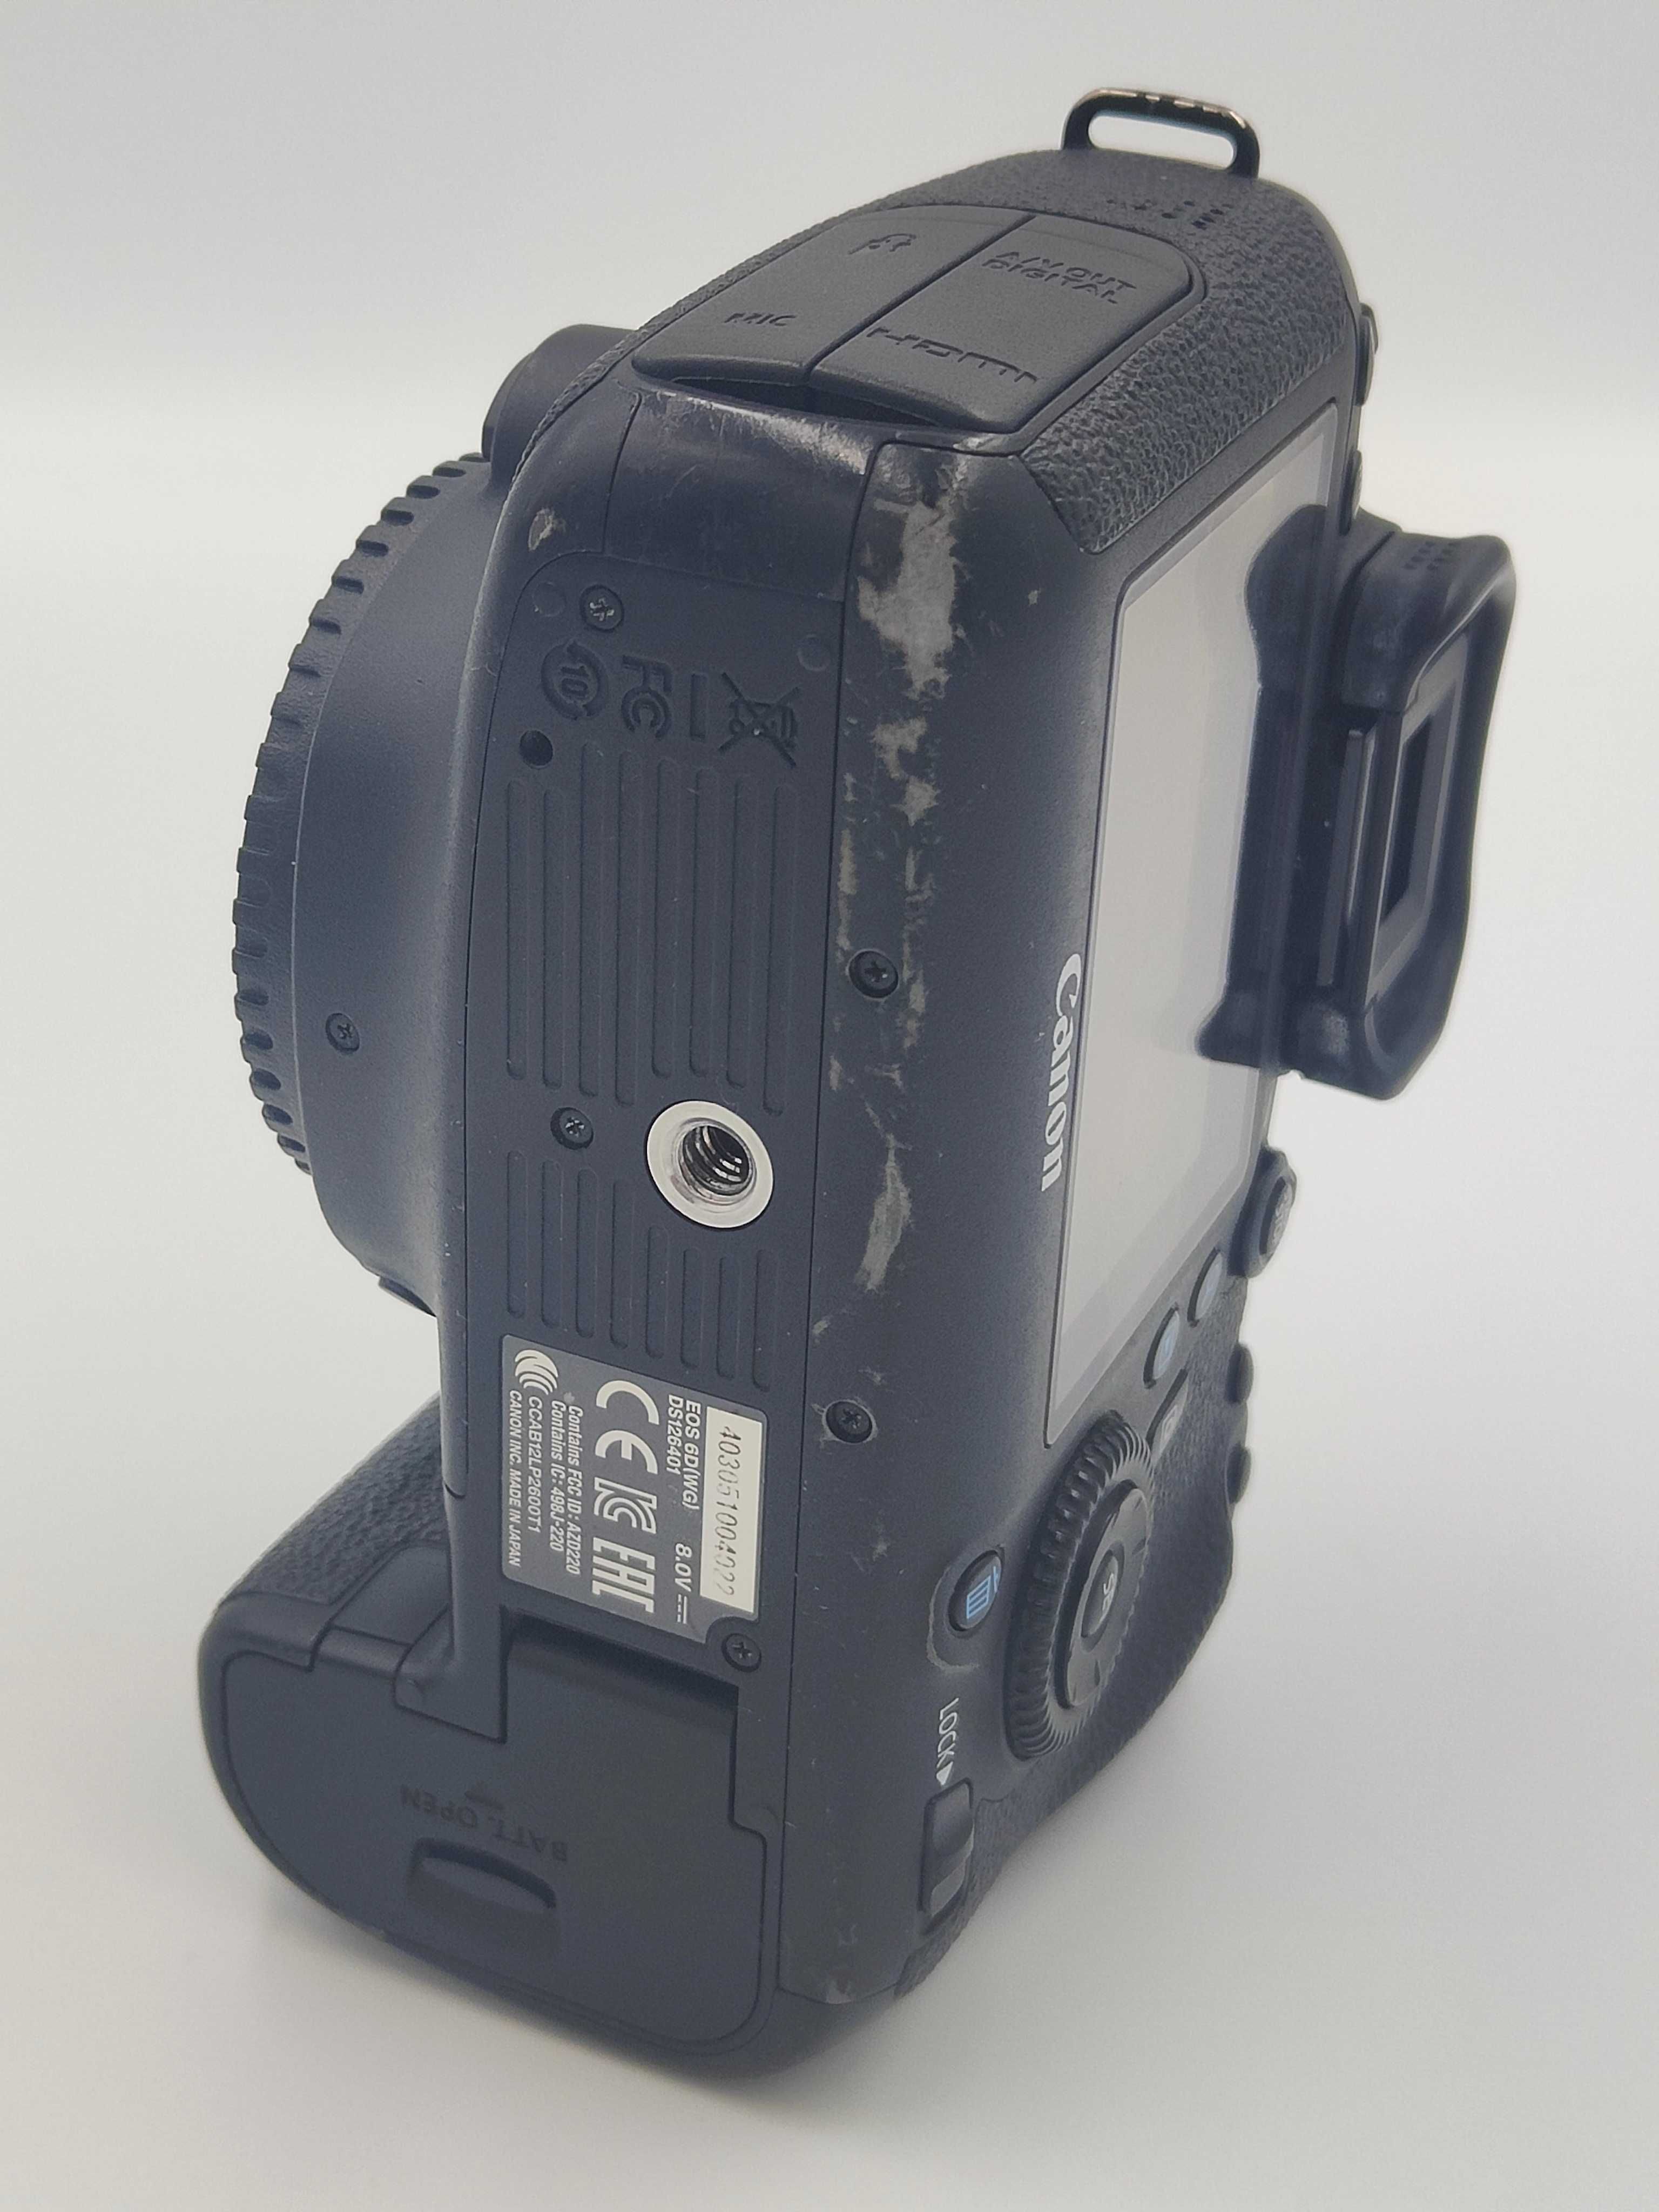 Aparat fotograficzny Canon 6D - body - pełna klatka.